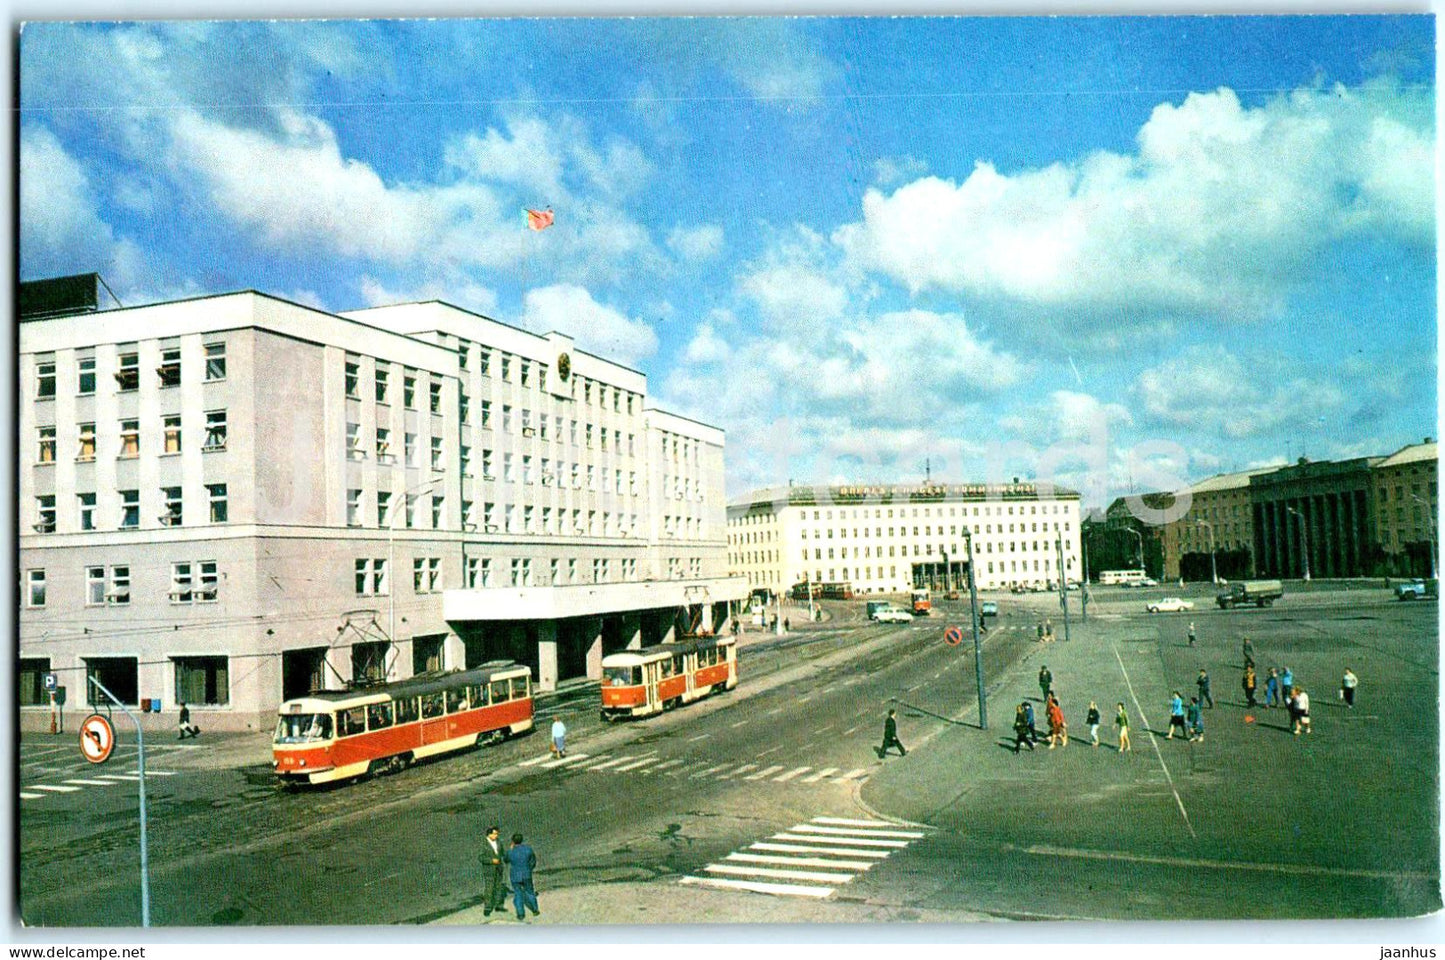 Kaliningrad - Konigsberg - Victory square - tram - 1975 - Russia USSR - unused - JH Postcards